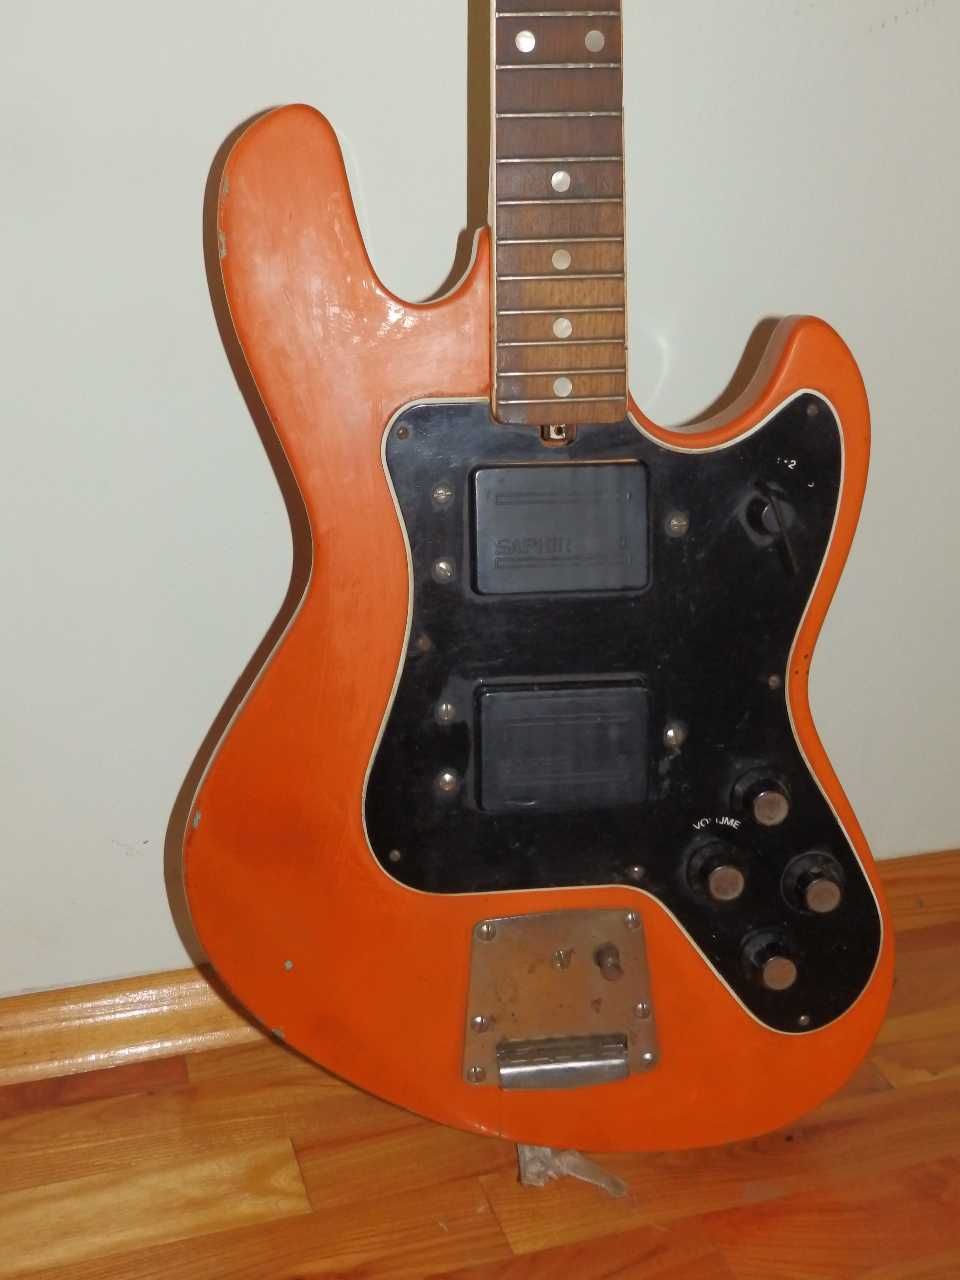 Електрически китари Yamaha SE 203 и Jolana Galaxis